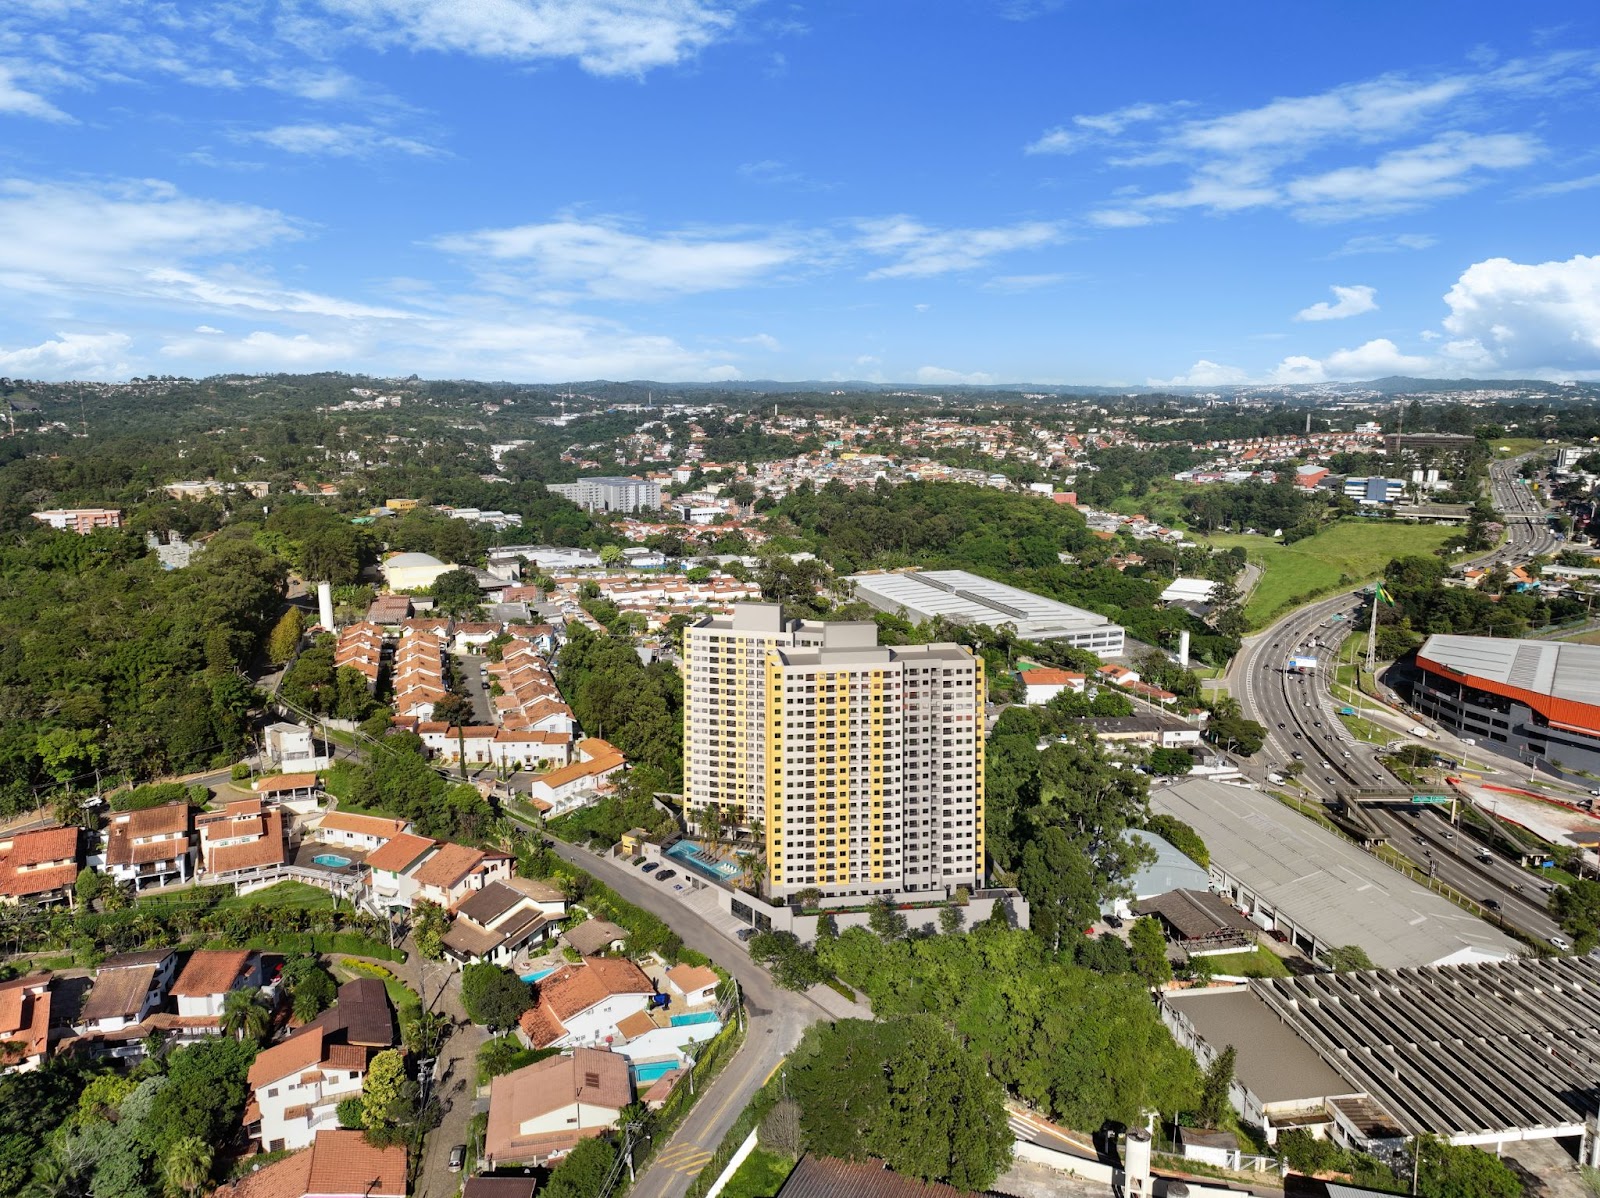 Vista aérea das torres do Natur Granja Viana, localizado em uma região residencial arborizada.